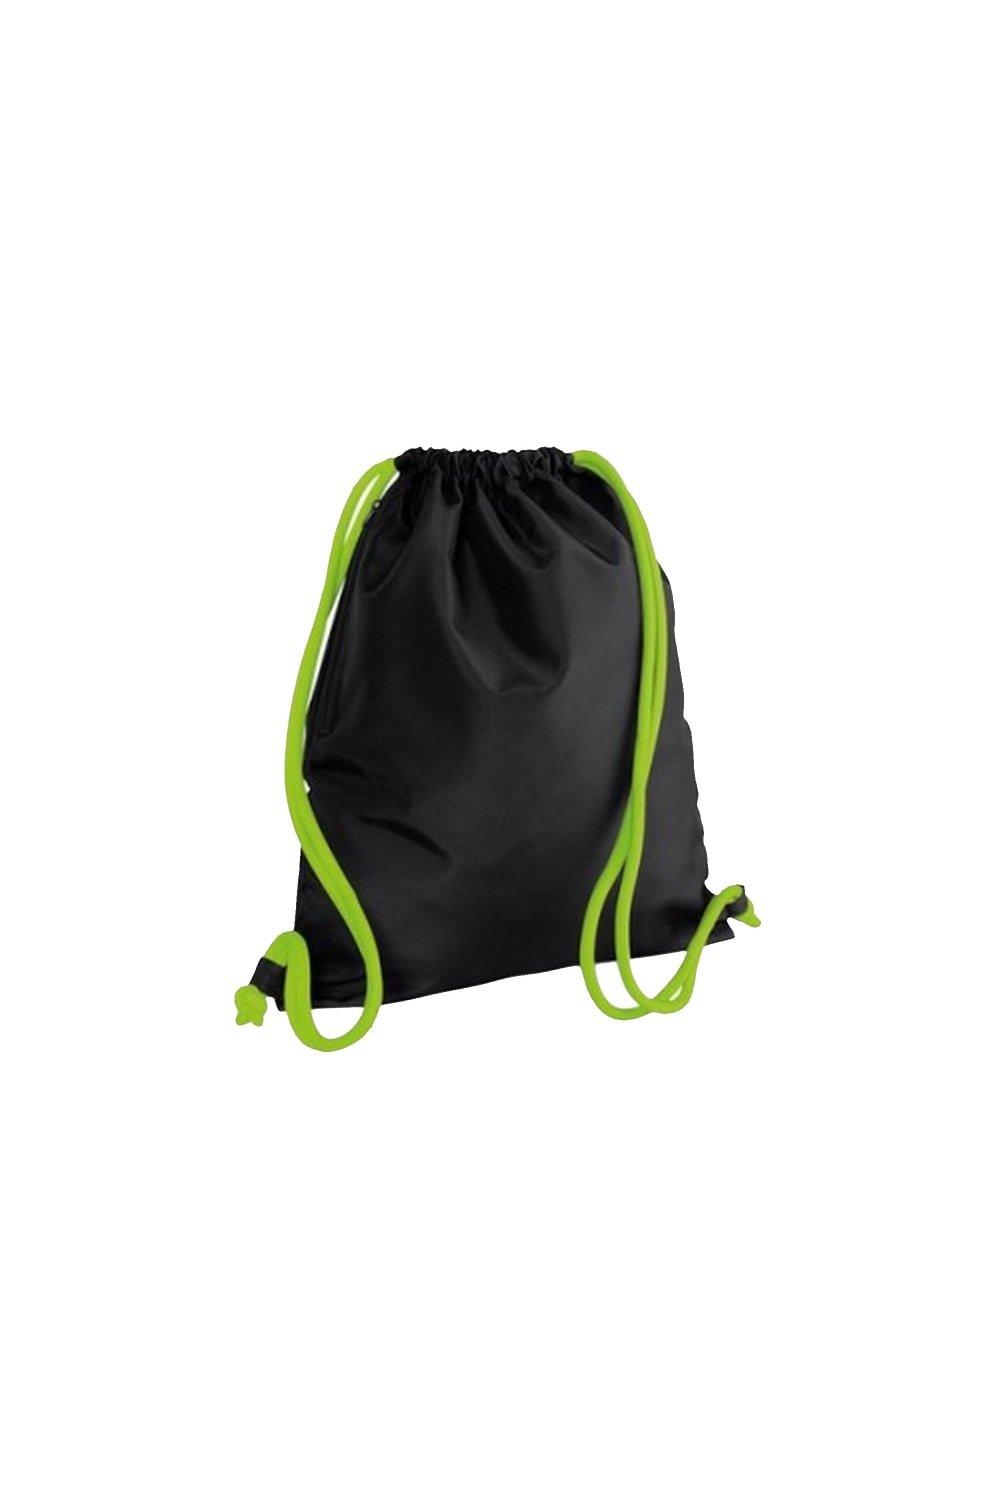 Сумка Icon на шнурке / Gymsac Bagbase, черный сумка urban gymsac на шнурке sol s черный